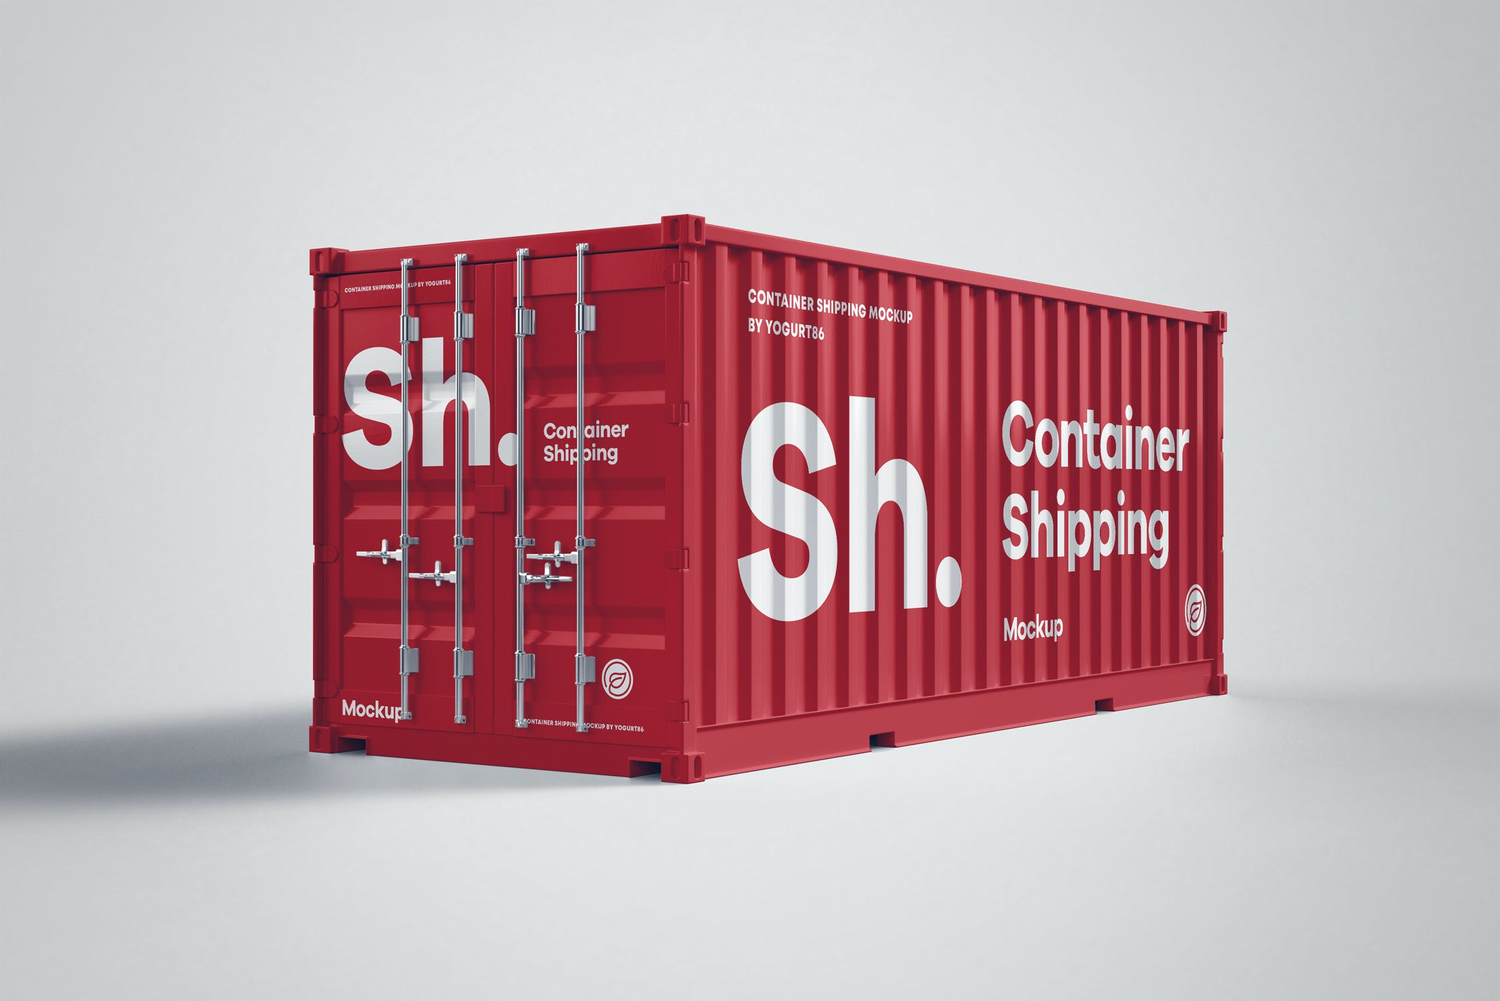 4688 6款创意集装箱移动房线下路演品牌设计贴图ps样机素材展示效果图 Shipping Container Mock-up@GOOODME.COM